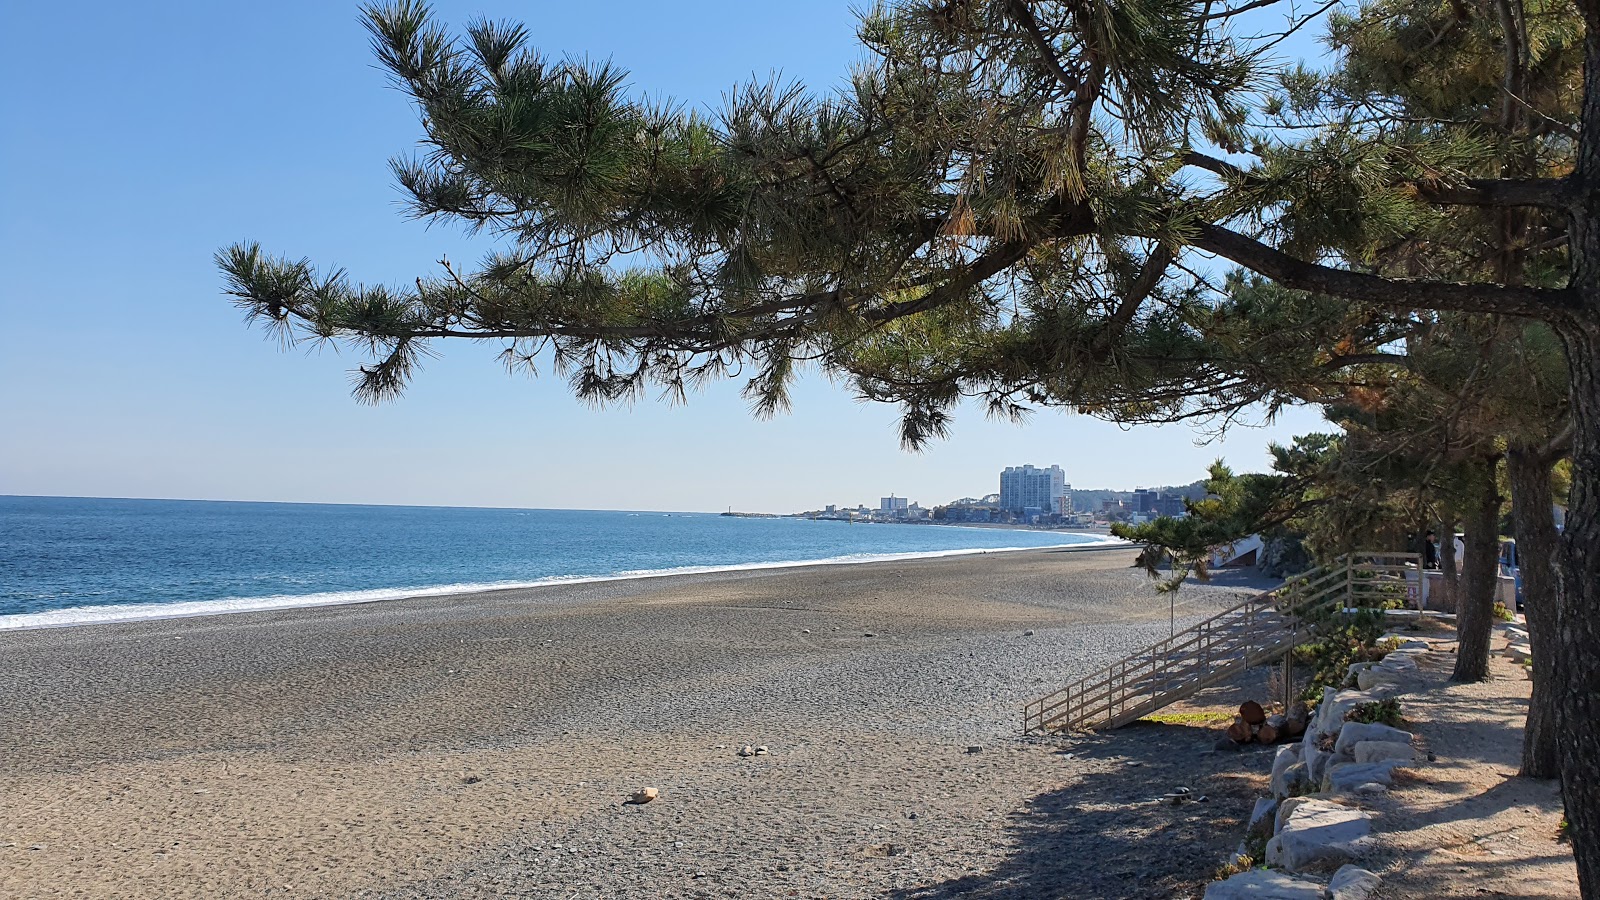 Foto de Jeongja Beach con muy limpio nivel de limpieza